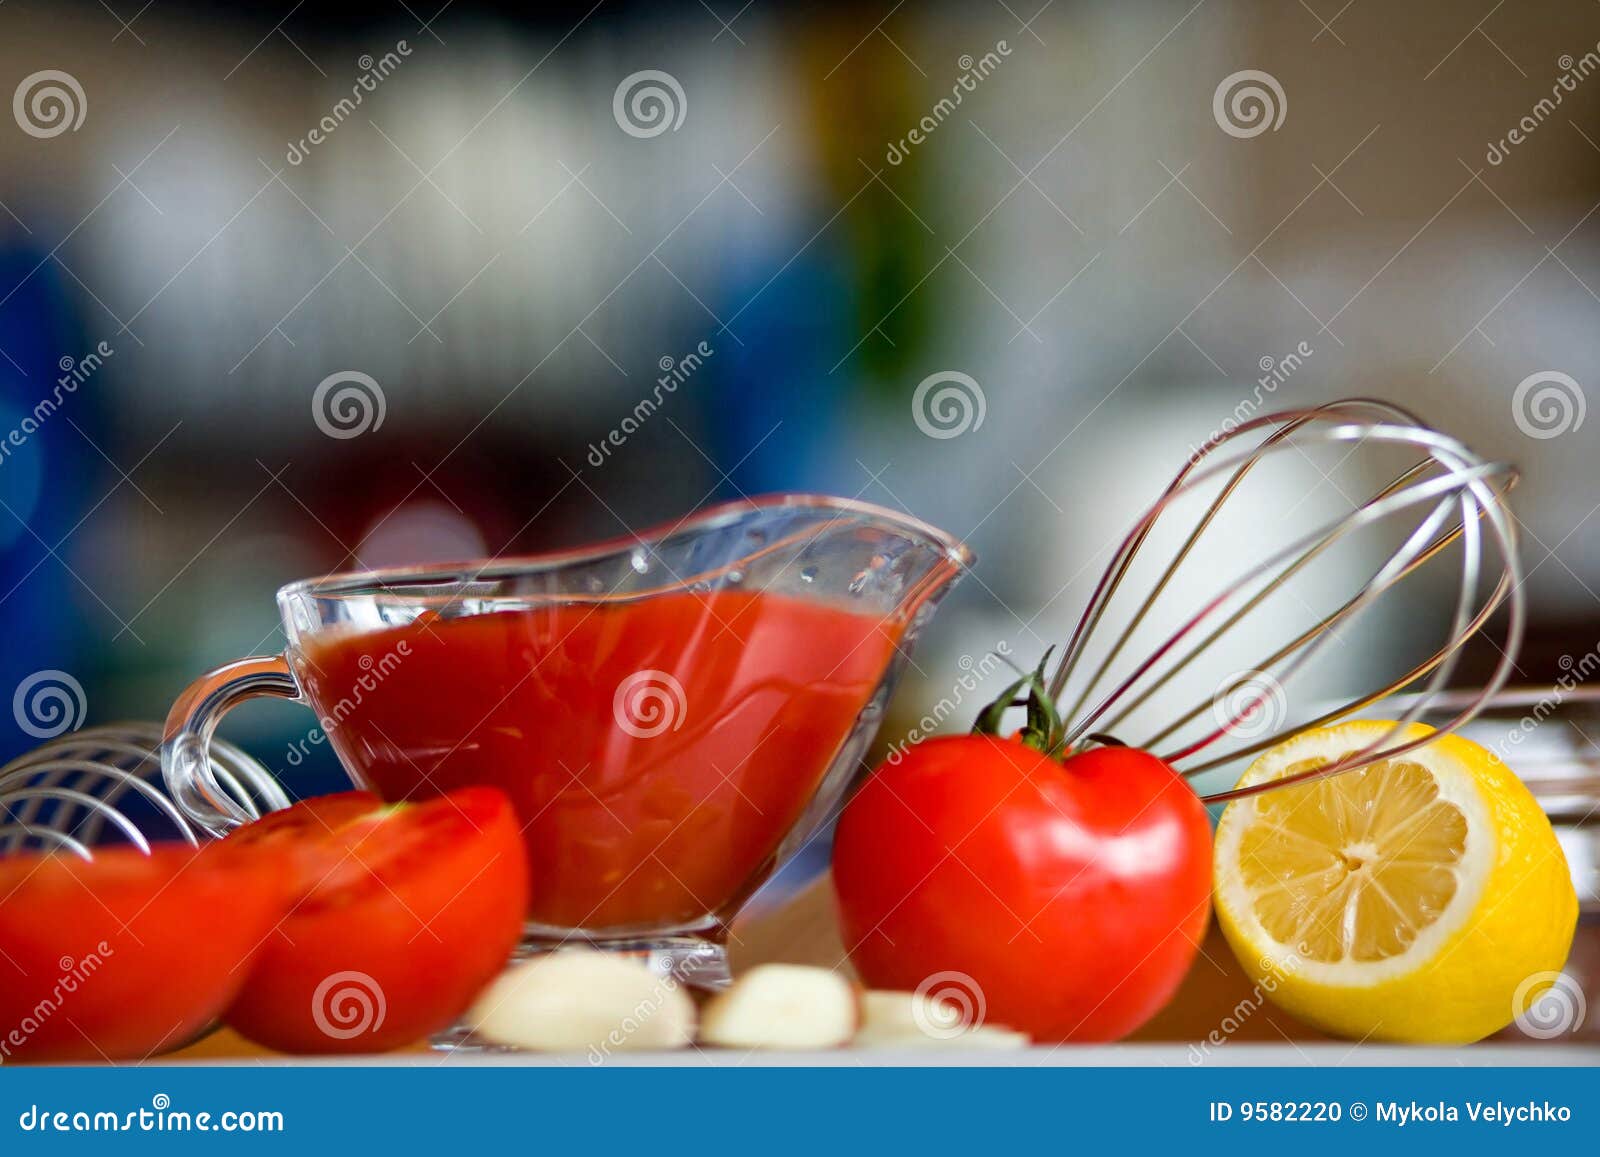 preparing tomato poignant sauce